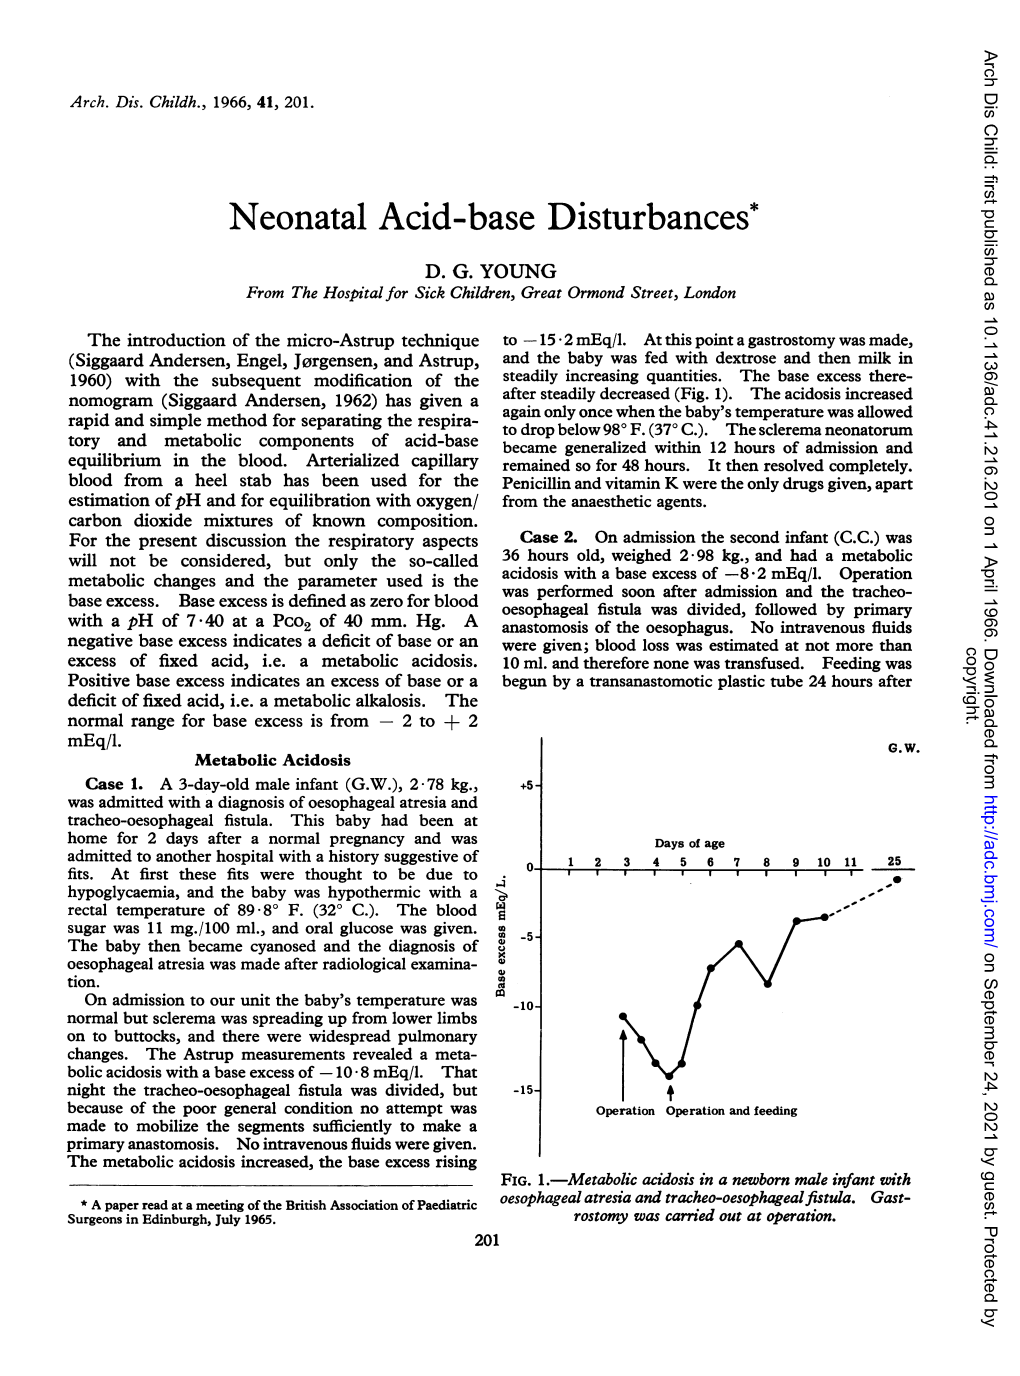 Neonatal Acid-Base Disturbances*